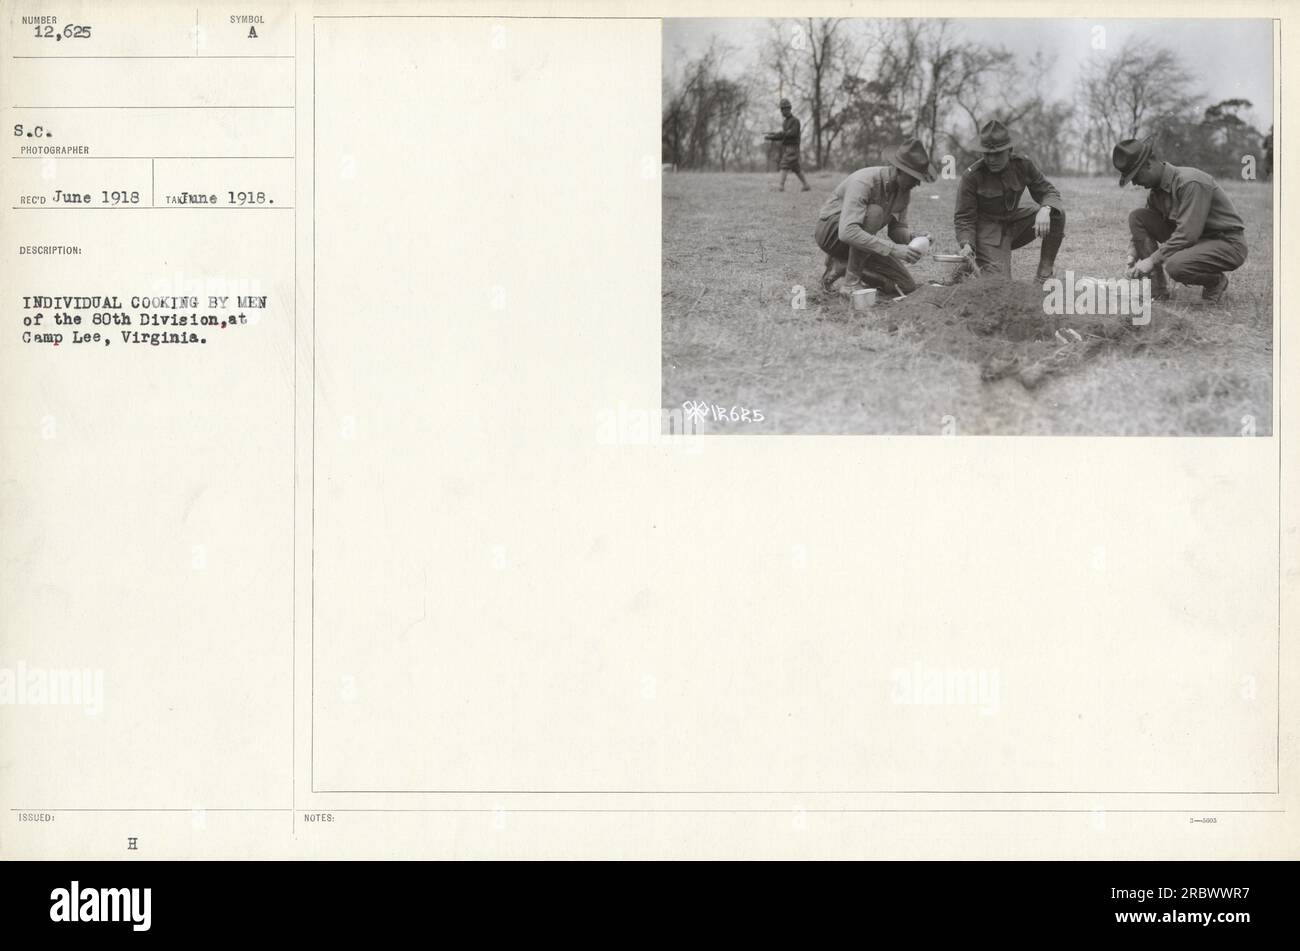 Das Bild zeigt ein individuelles Kochprogramm von Männern der 80. Division in Camp Lee, Virginia, im Juni 1918. Dieses Foto hat die Nummer 12.625 und wurde von Fotograf ED aufgenommen. Stockfoto